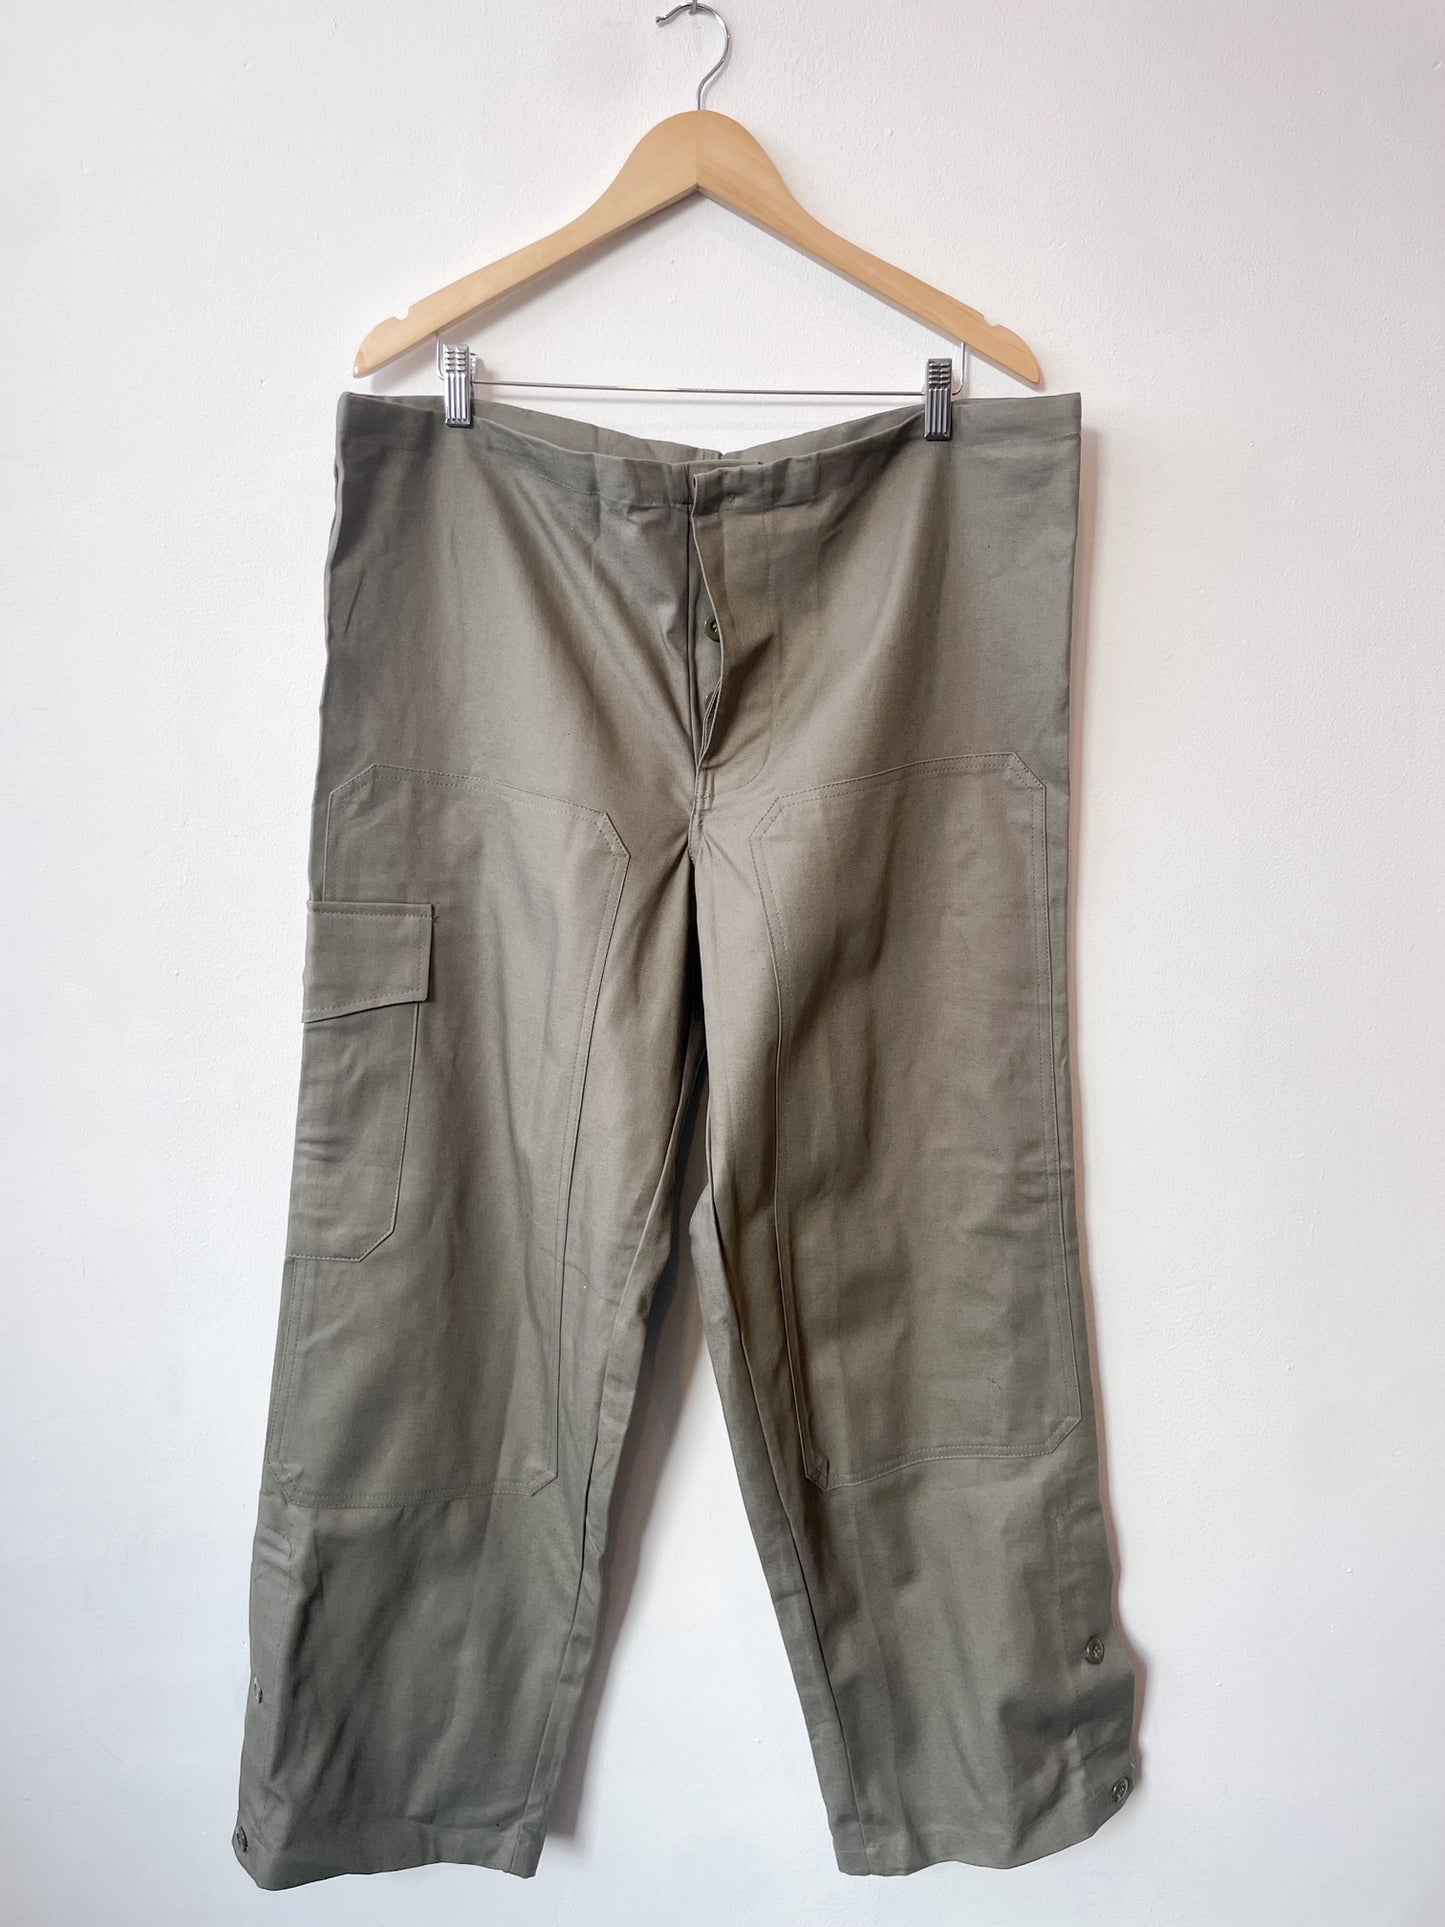 Vintage Drawstring Workwear Pants